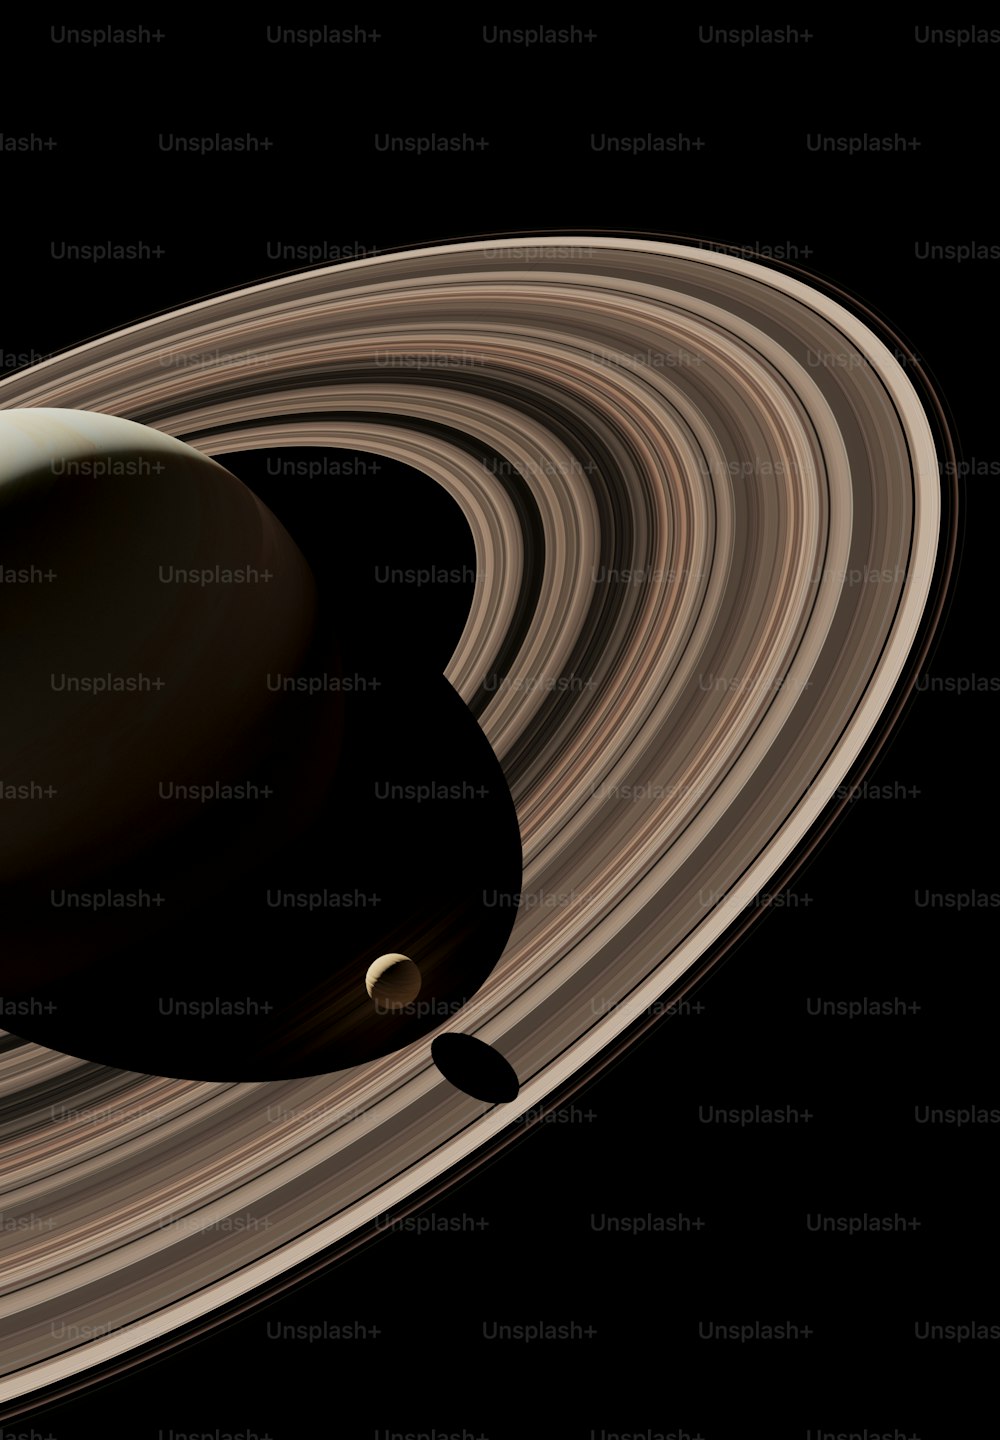 Rappresentazione artistica di Saturno e dei suoi anelli